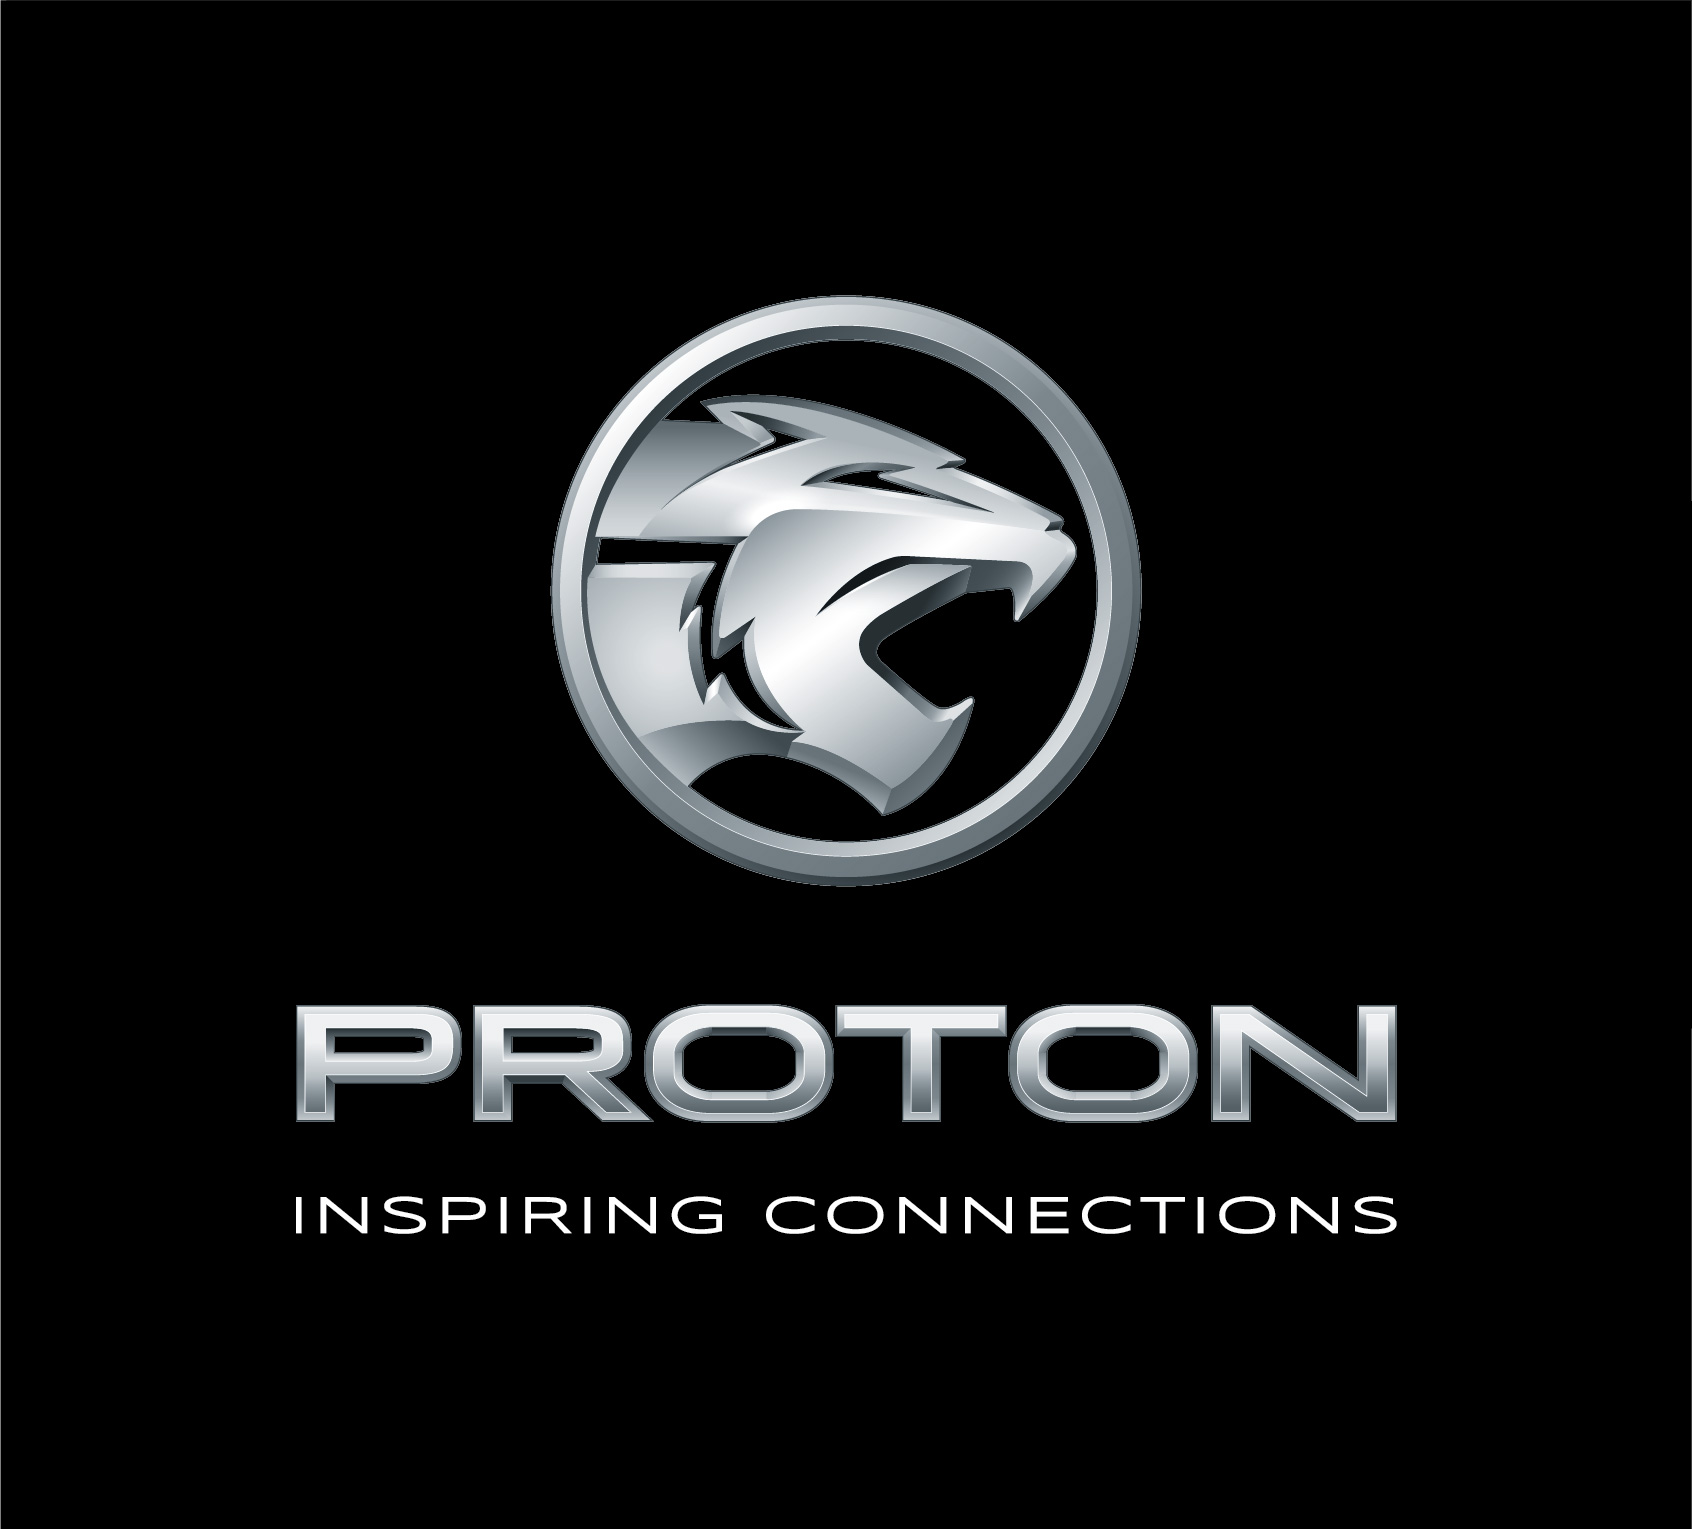 Proton brand logo